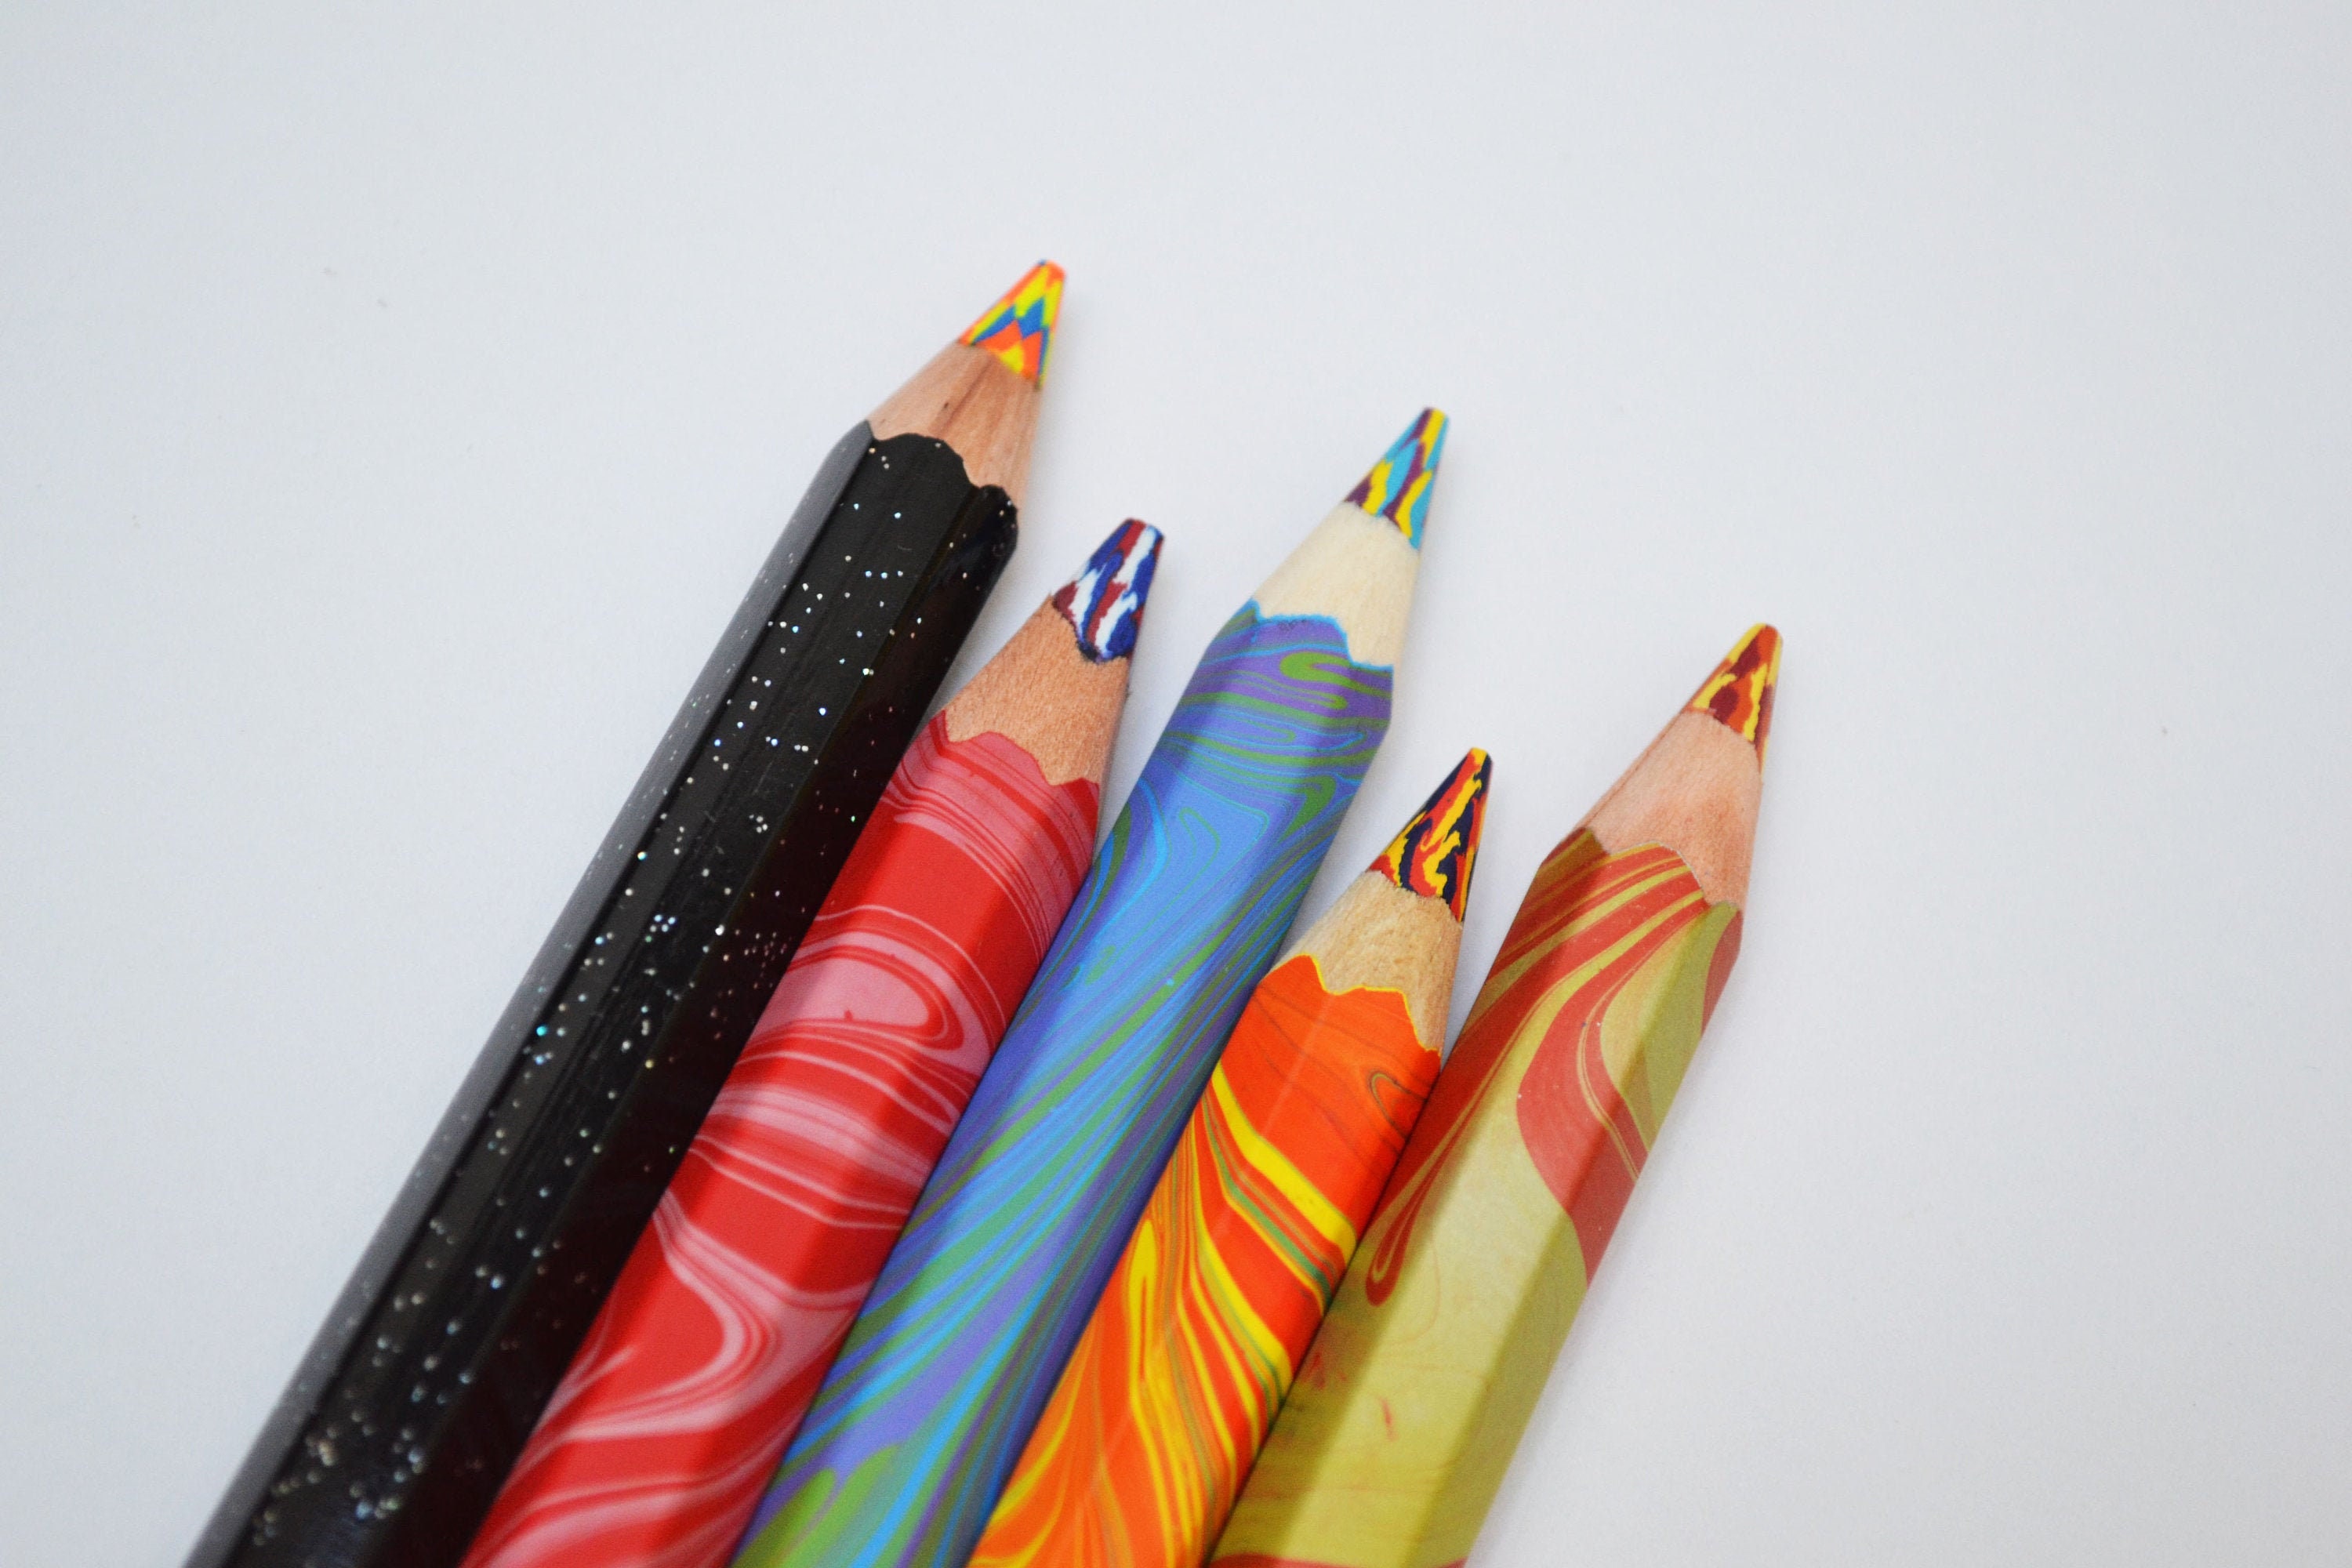 Koh-I-Noor Magic Lead Pencil - Original